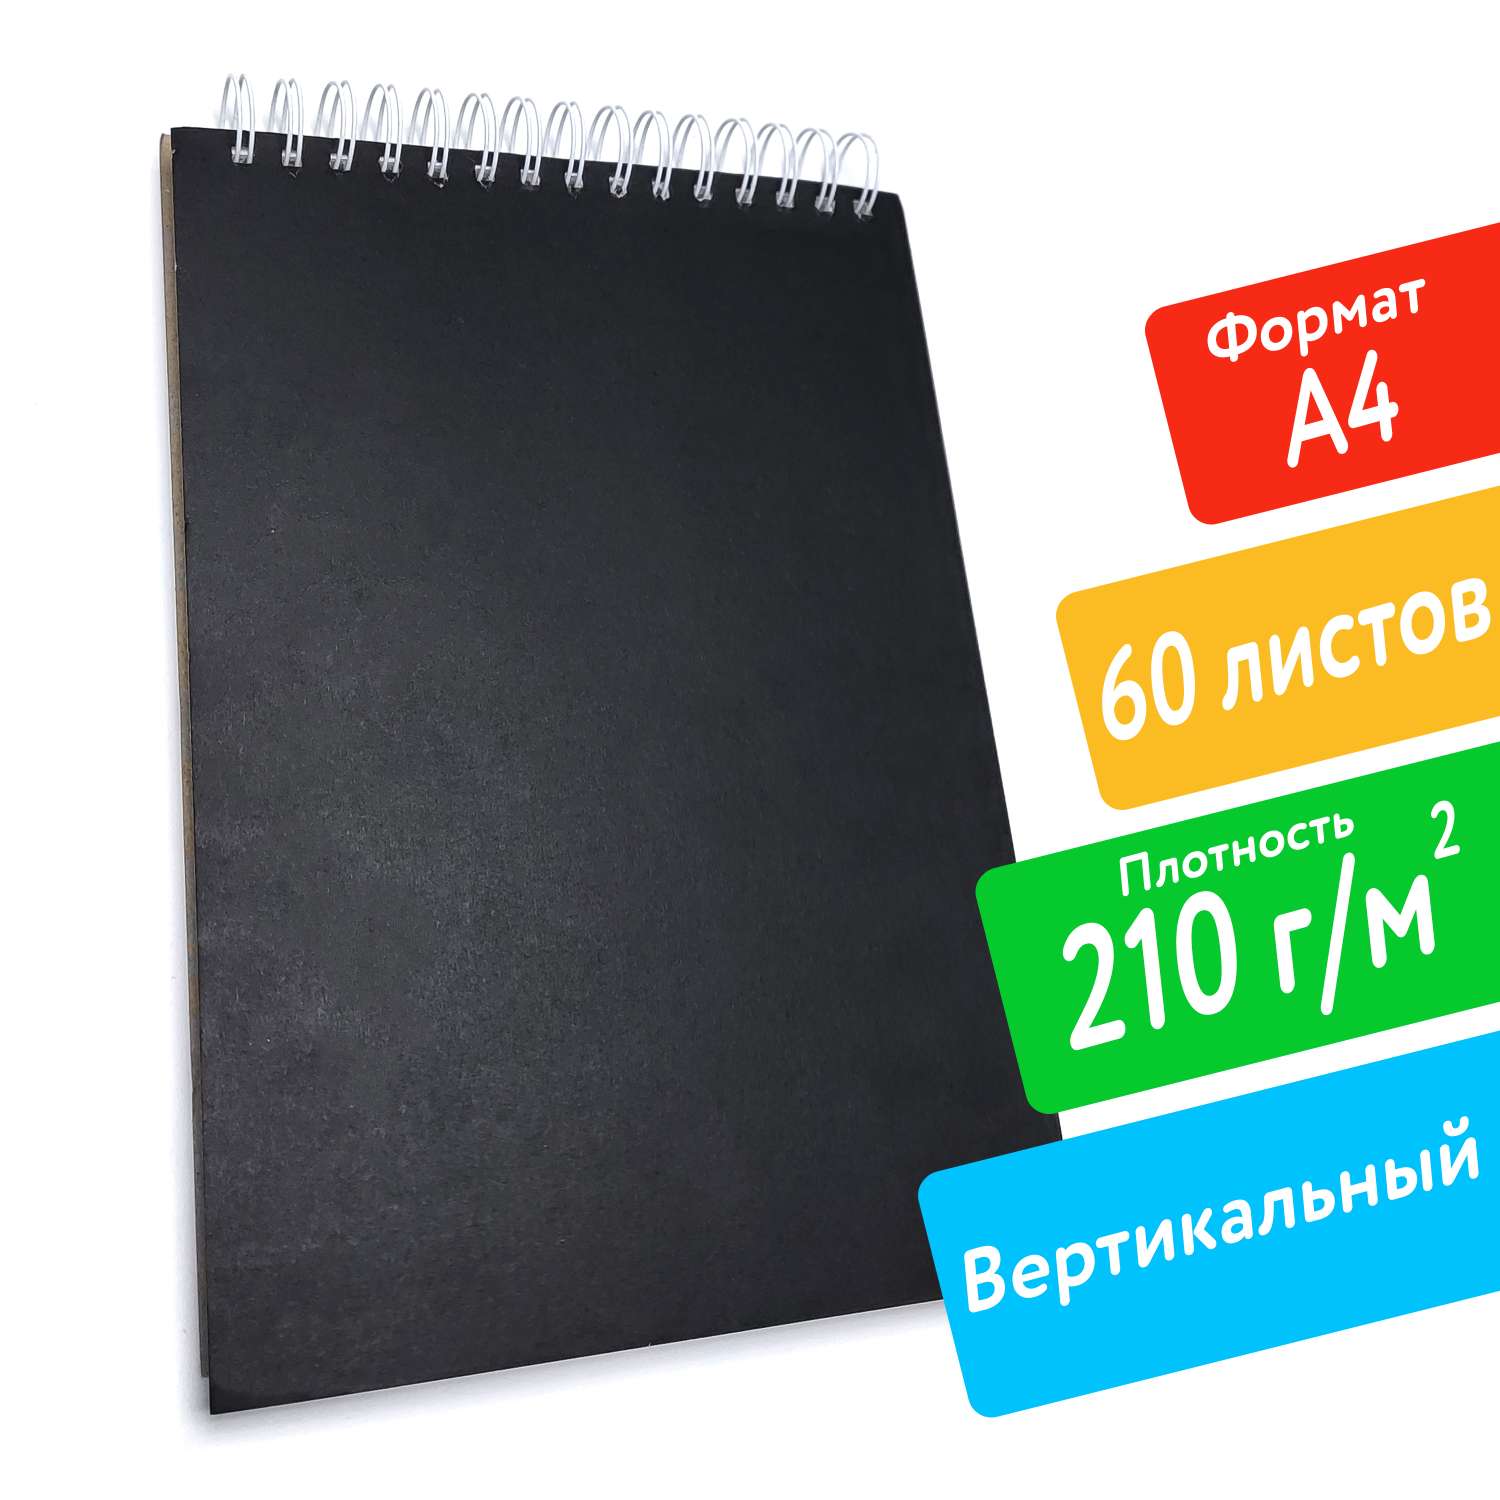 Скетчбук ПСВ А4 210грамм с черной обложкой вертикальный 60 листов - фото 2